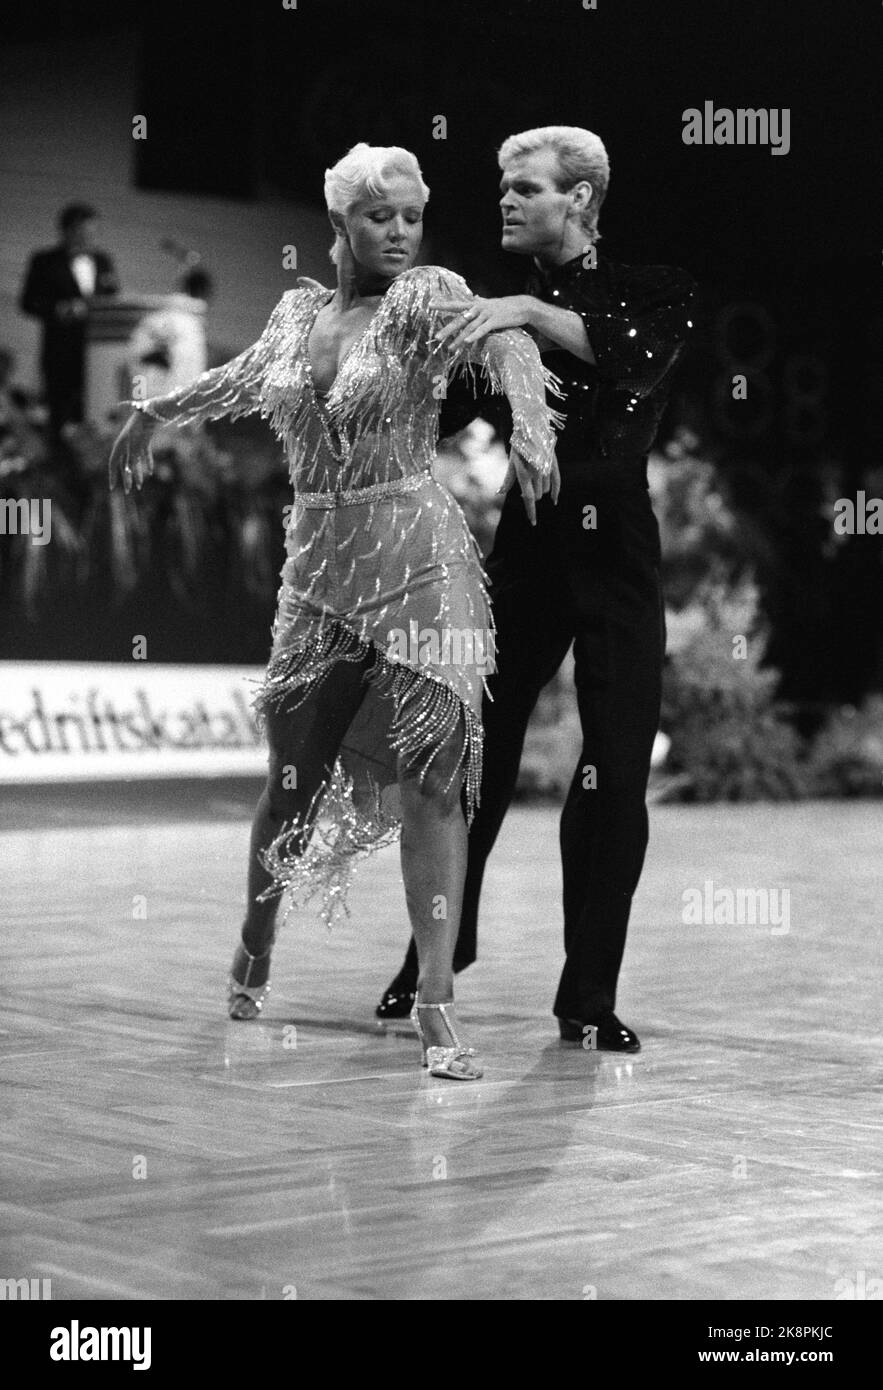 19 mars 1988 d'Oslo. Ekeberghallen. Coupe du monde de danse. Voici le couple norvégien Tone Nyhagen et Knut Sæborg qui a remporté le titre de coupe du monde en danses latino-américaines. Photo: Eystein Hanssen / NTB / NTB Banque D'Images